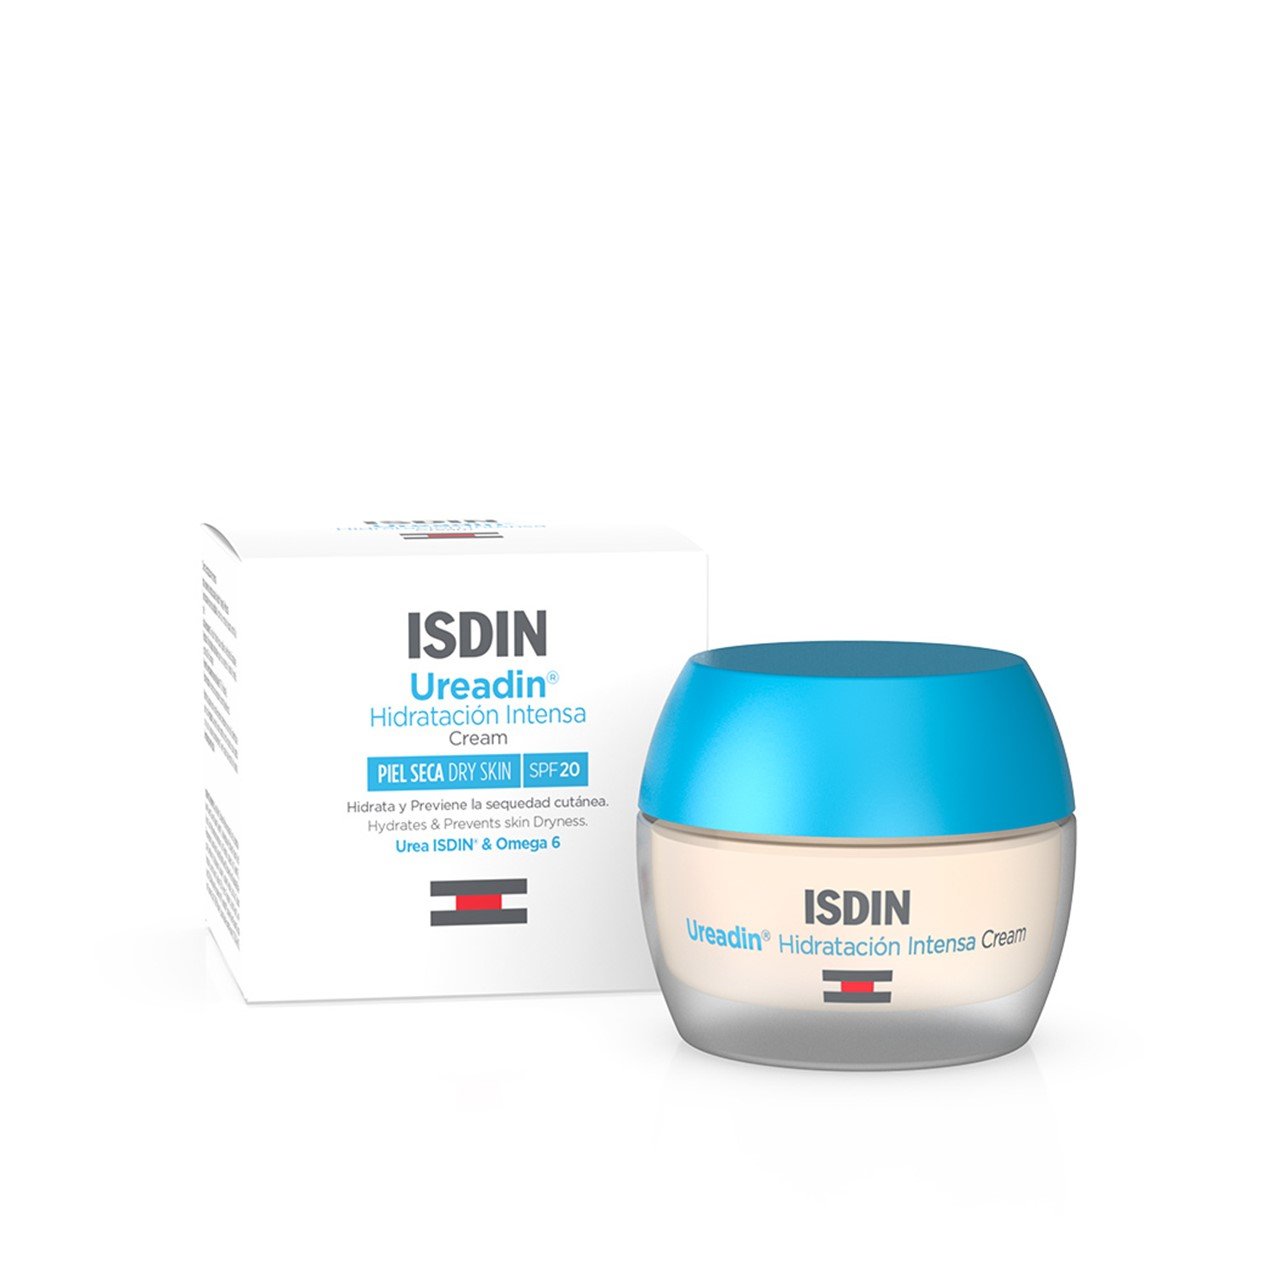 ISDIN Ureadin Intense Hydration Cream SPF20 50ml